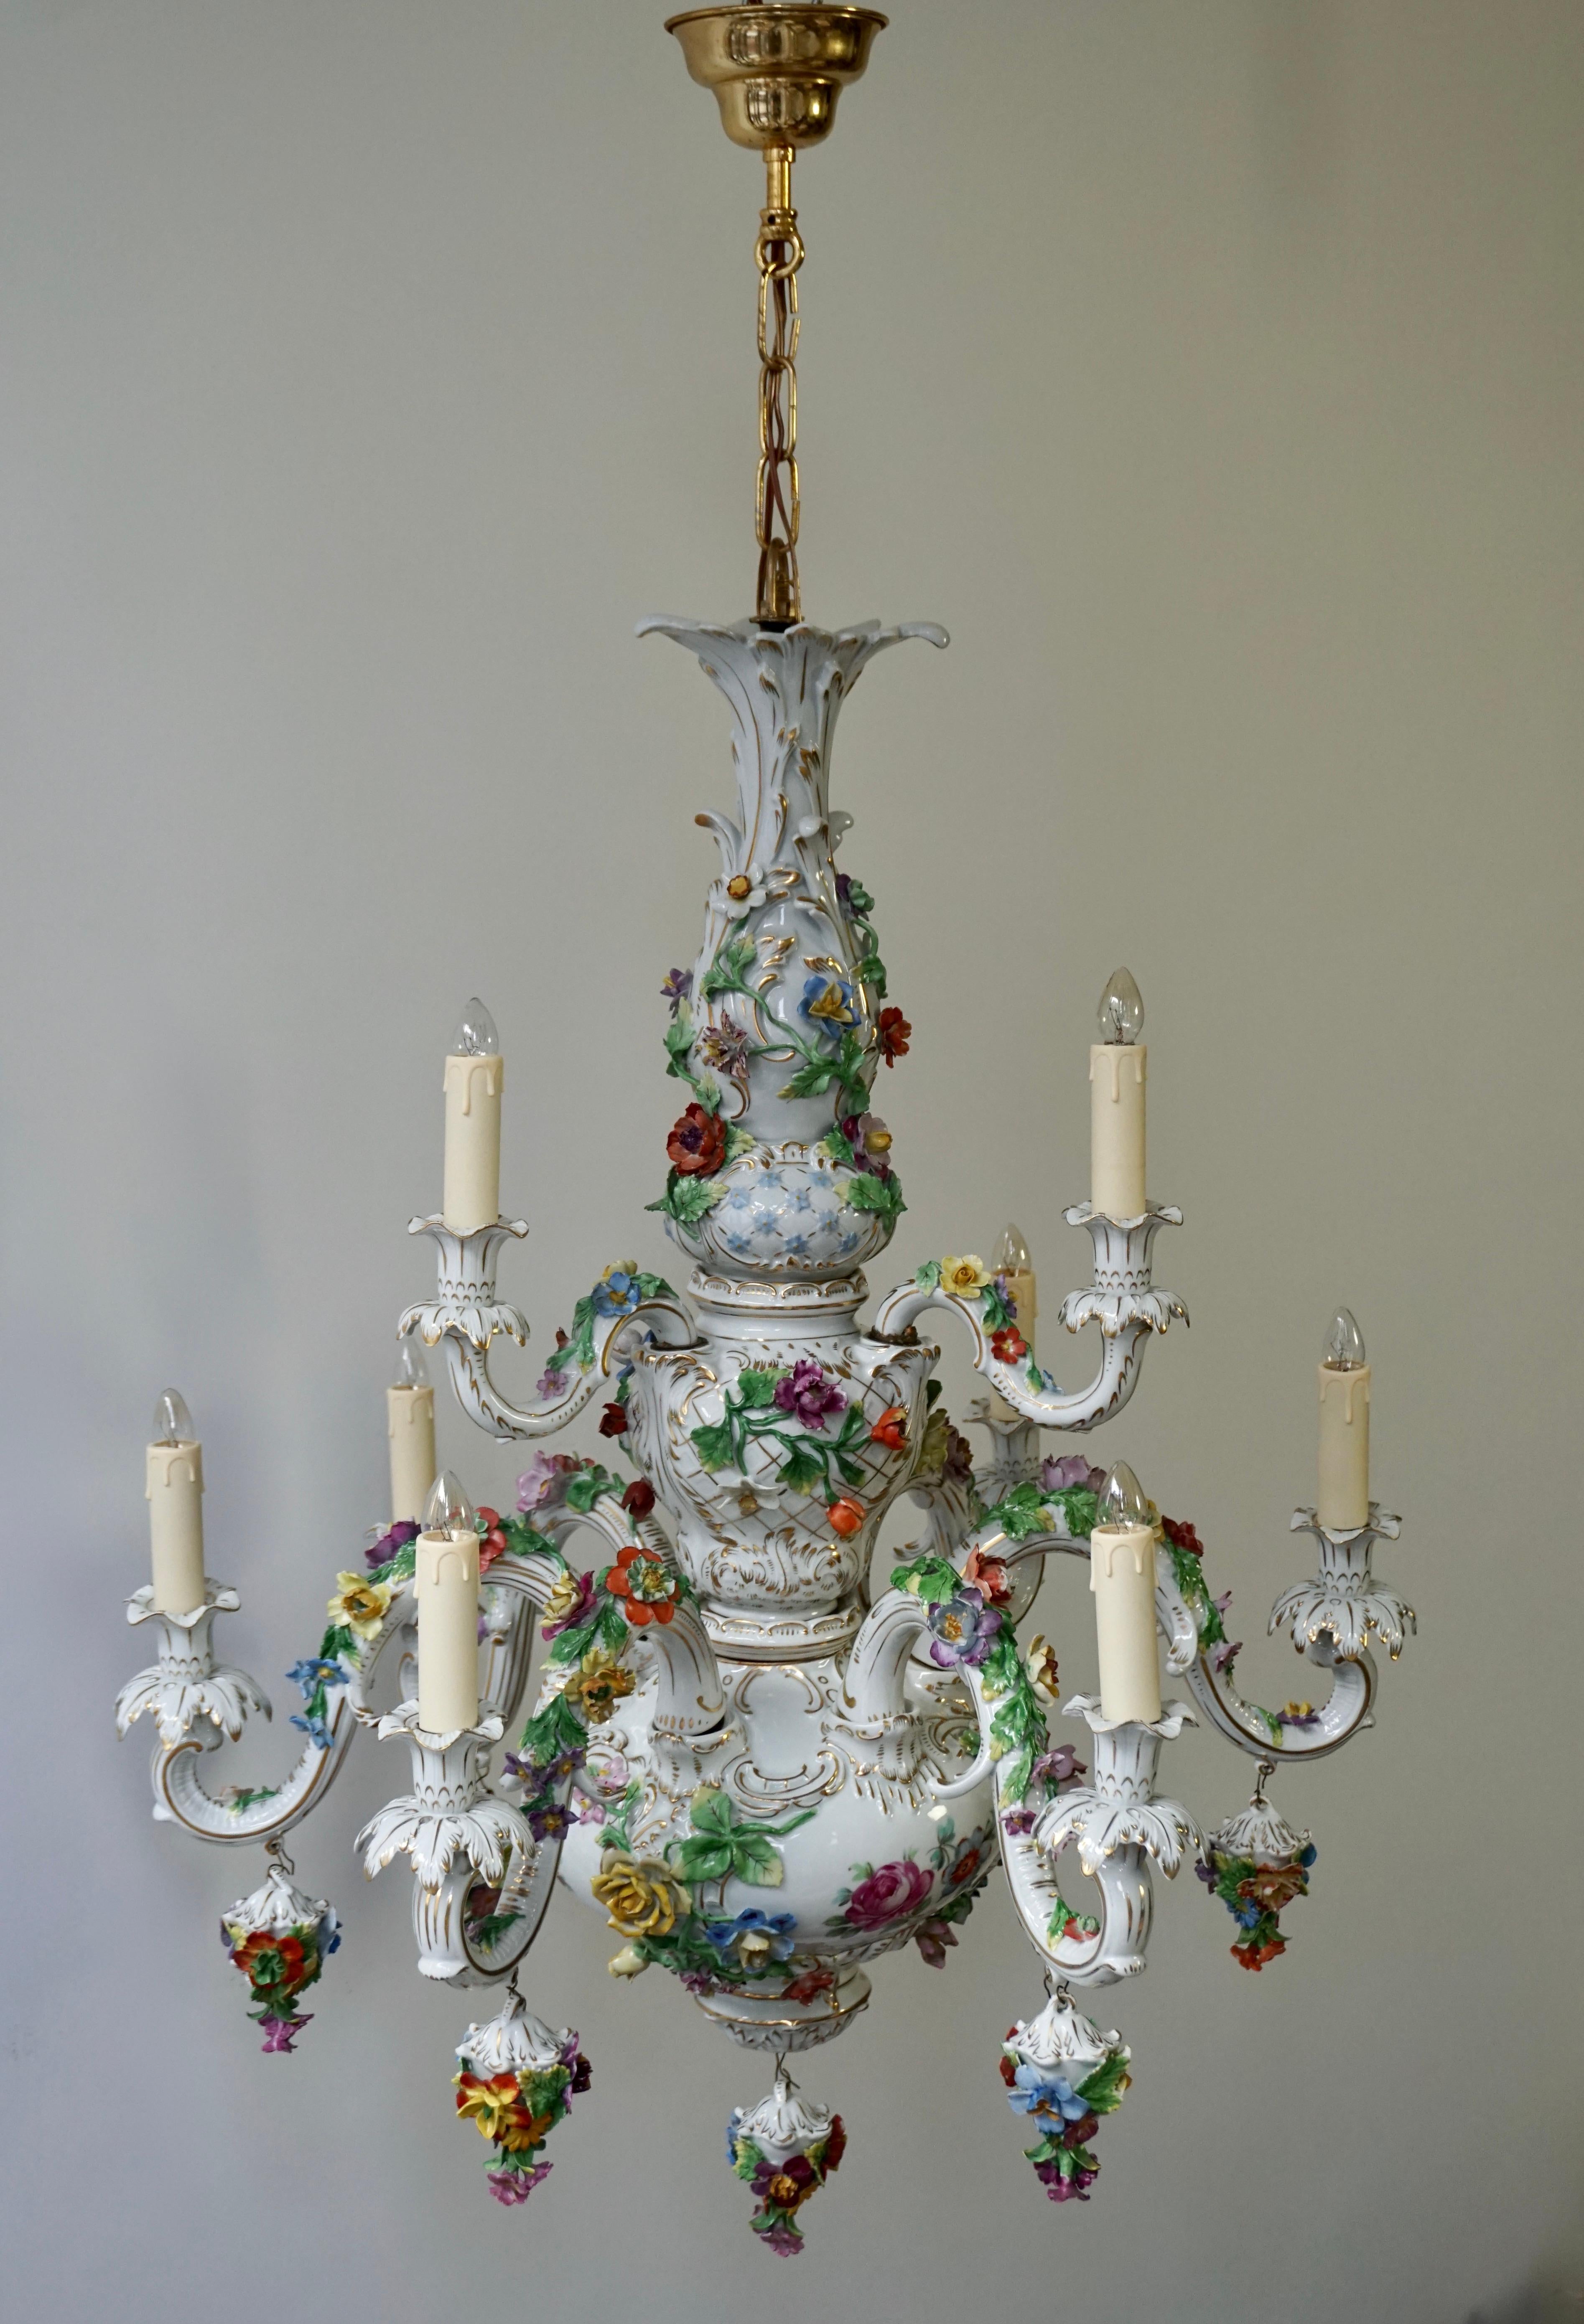 Dieser monumentale Porzellankronleuchter ist mit einer Vielzahl von Blumenbouquets verziert und wurde möglicherweise in Italien oder Deutschland hergestellt. Ein wunderbares Beispiel für außergewöhnliche Kunstfertigkeit ist diese bezaubernde,